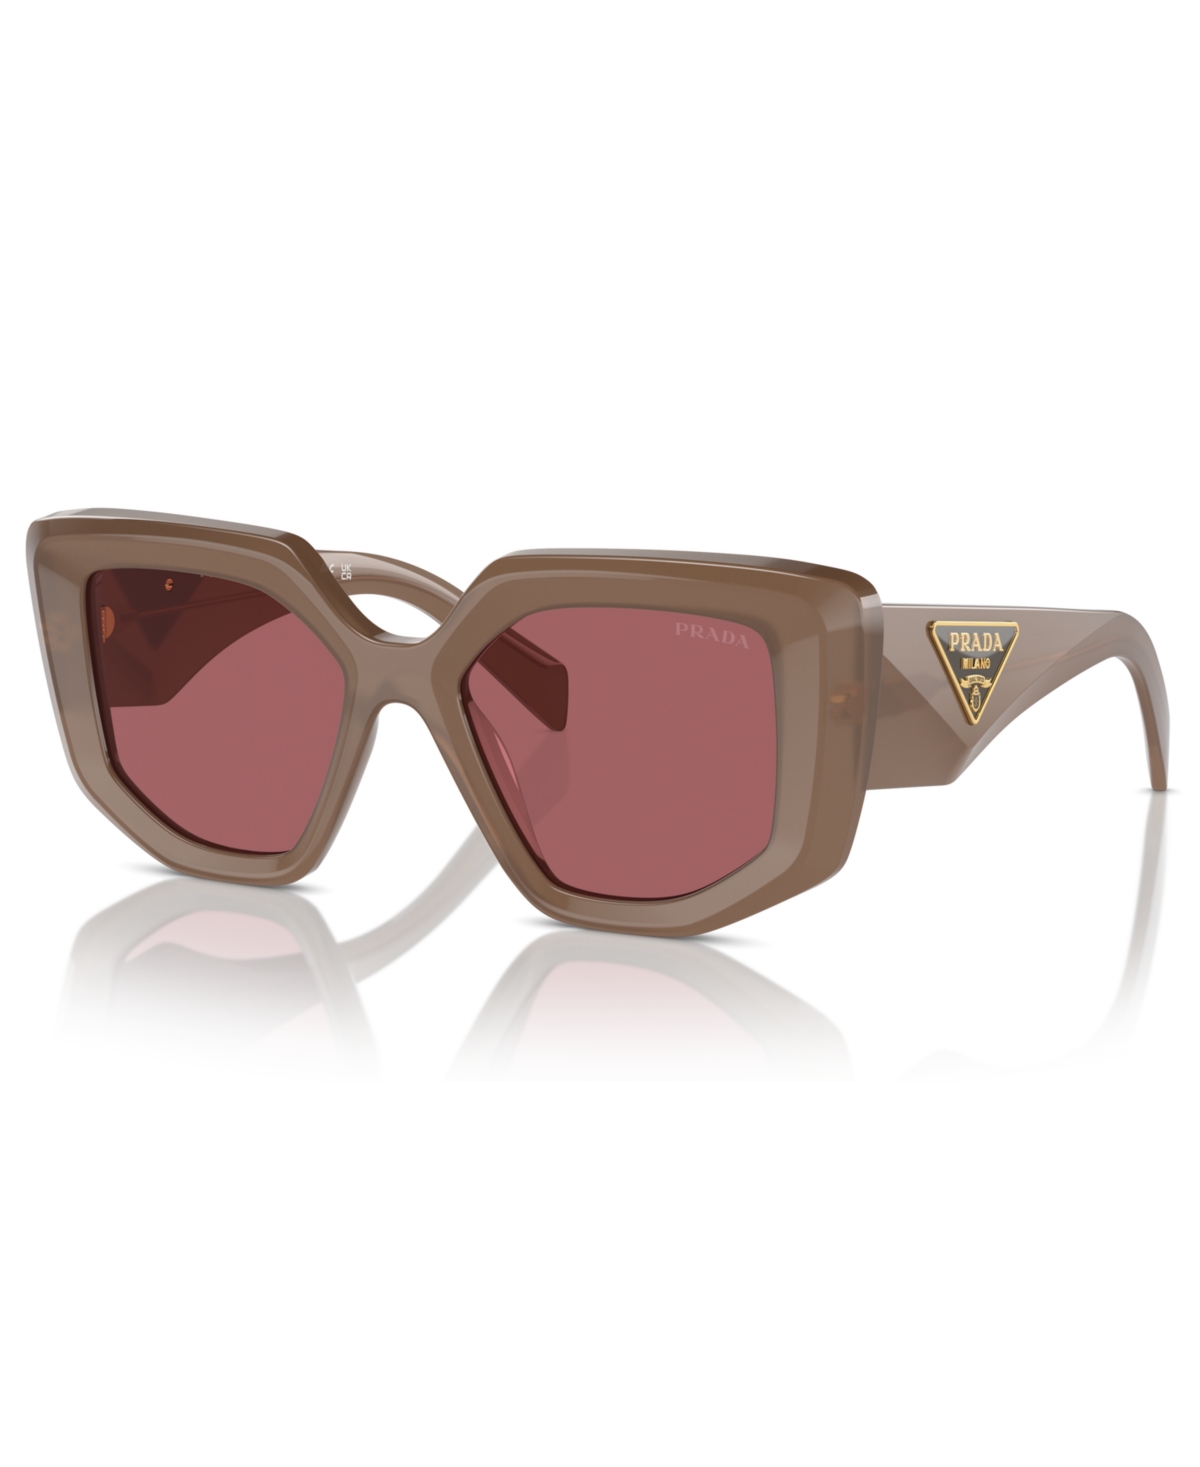 Women's Sunglasses, Pr 14ZS50-x - Opal Loden